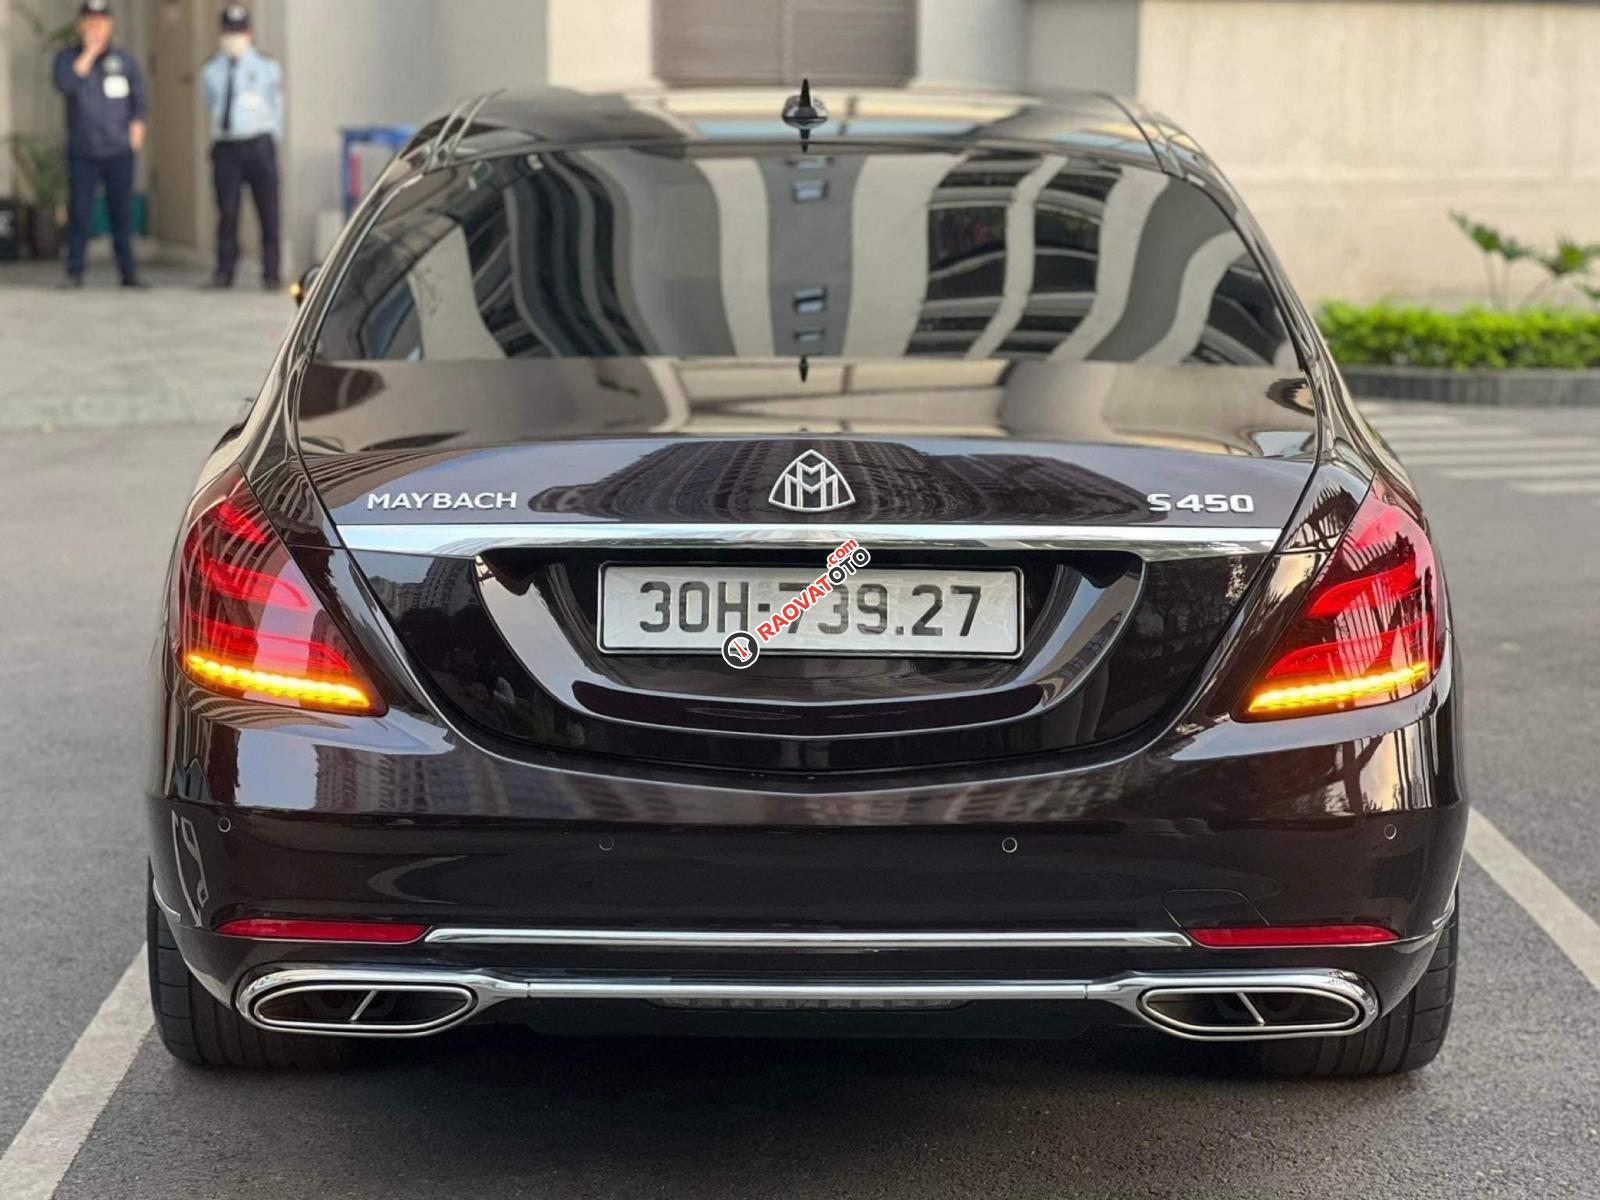 Bán Mercedes-Maybach S 450 sx 2019 giá 5 tỷ 830tr Màu Ruby Black-5